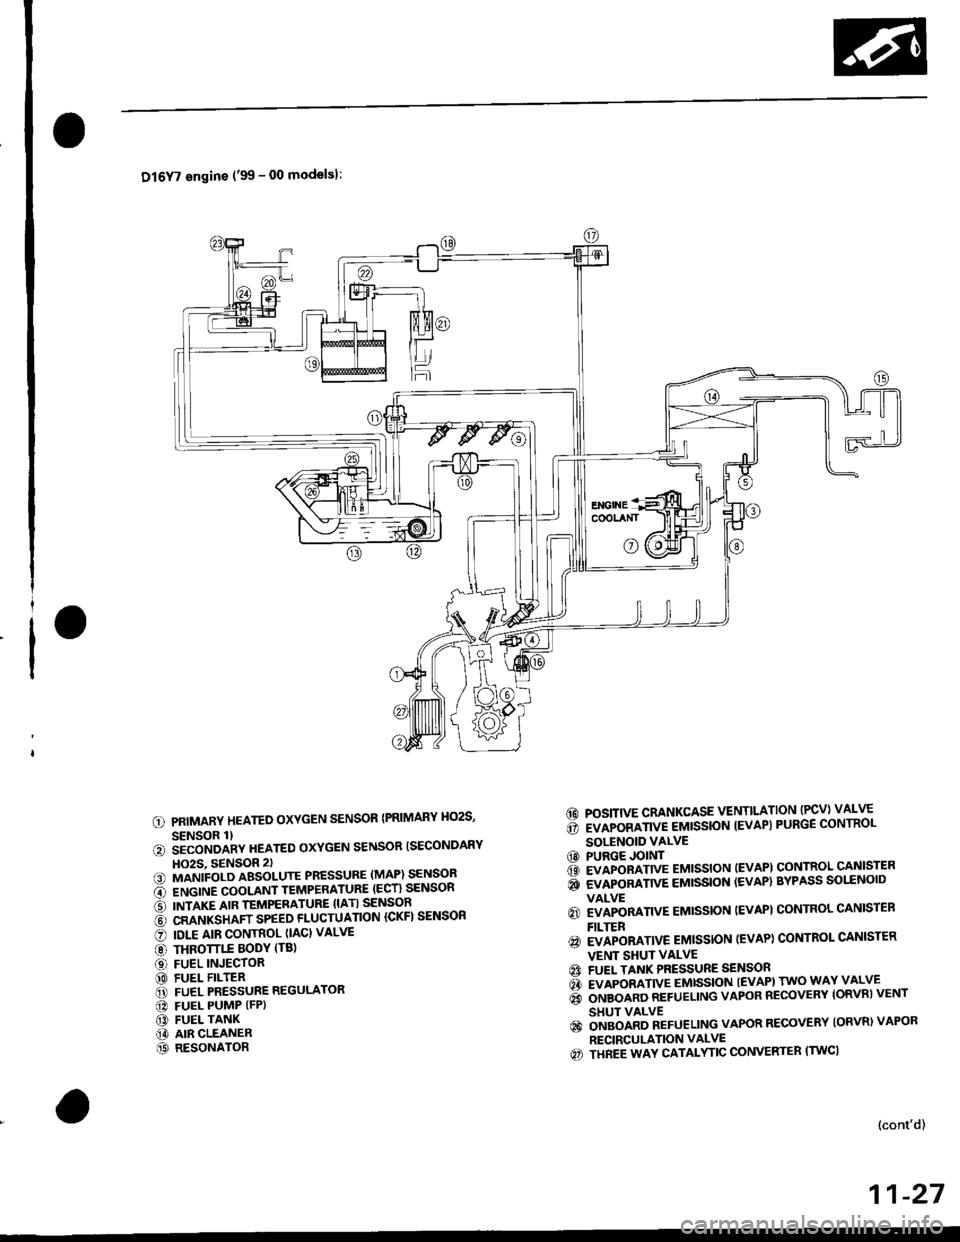 HONDA CIVIC 1997 6.G Workshop Manual Dl6Y7 engins (99 - 00 modelsl:
PRIMARY HEATED OXYGEN SENSOR {PRIMARY HO2S,
SENSOR 1)iiconoanv neareo oxYGEN sENsoR ISECoNDARY
HO2S, 9ENSOR 2)MANIFOLD ABSOLUTE PRESSURE (MAP) SENSOR
ENGINE COOLANT TEM